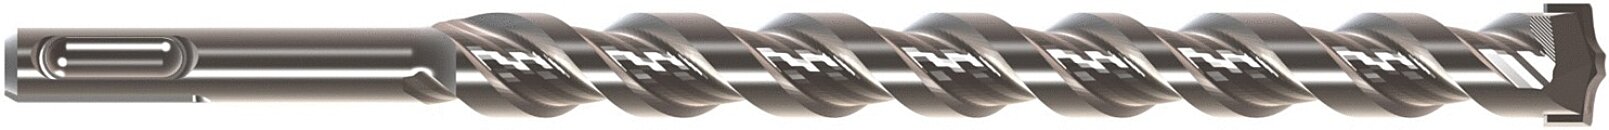 Foret métal diamètre 2 x 60 mm longueur utile 24 mm - queue 6 pans 1/4''  BOSCH 2608577045 - BOSCH - 2608577045